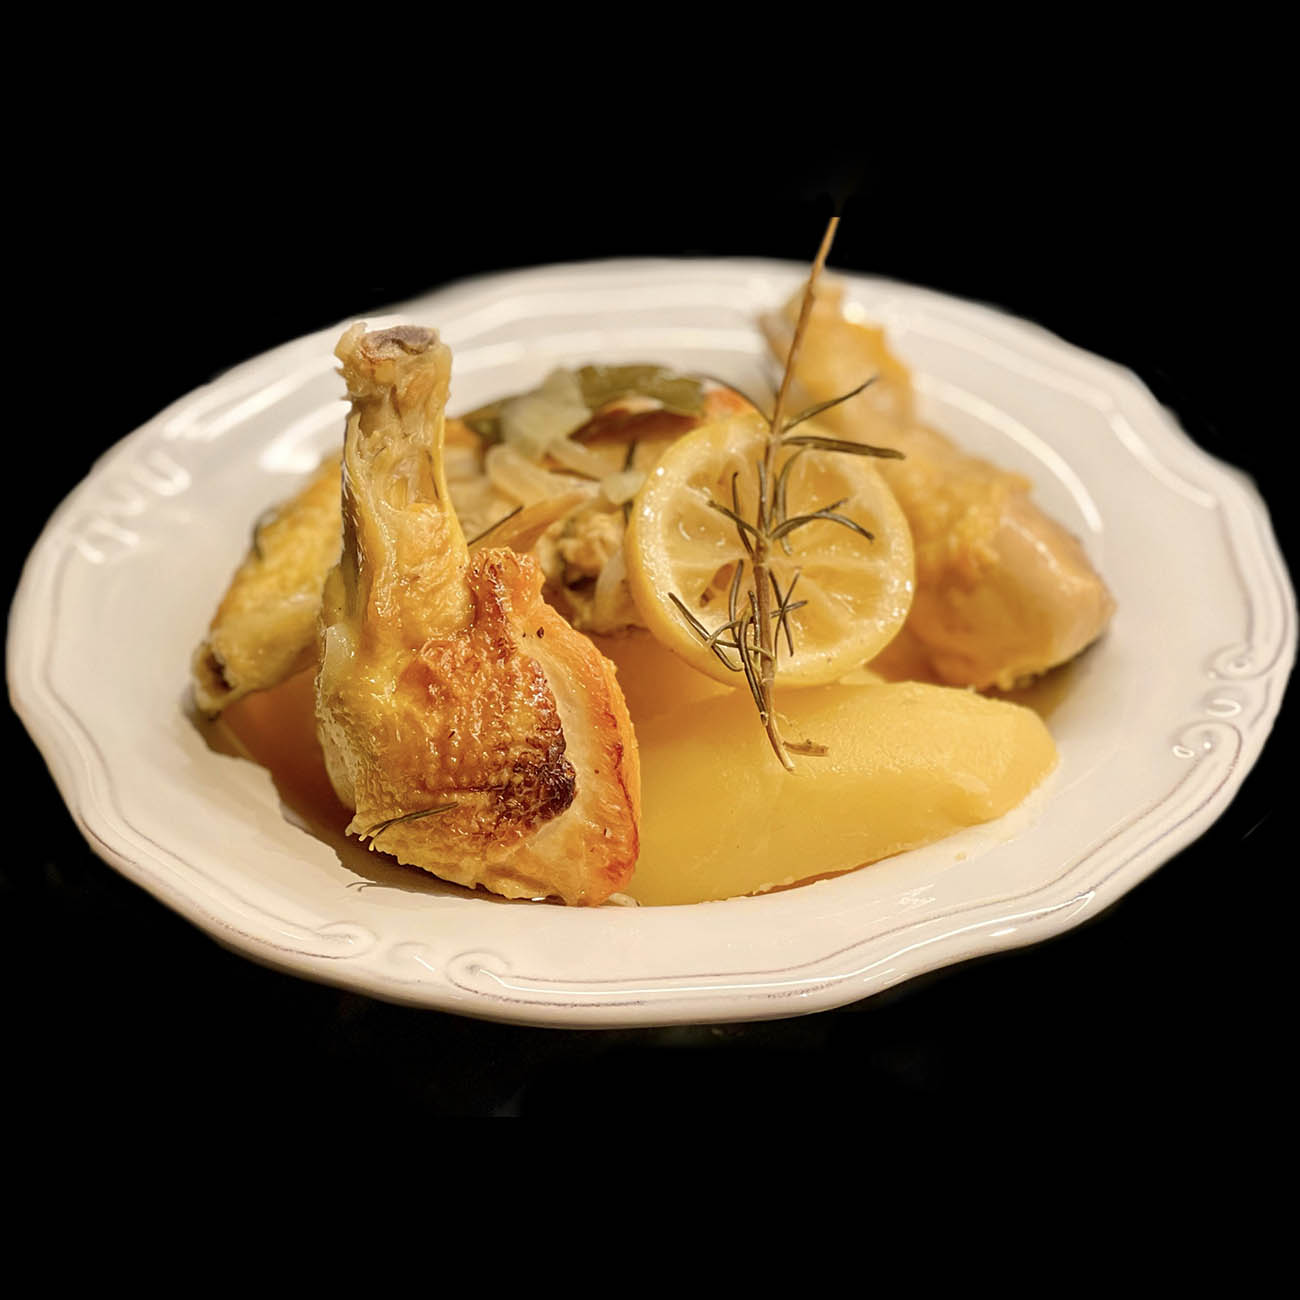 Κοτόπουλο με Πατάτες, Λεμόνι και Δεντρολίβανο του Σεφ Σωτήρη Ευαγγέλου